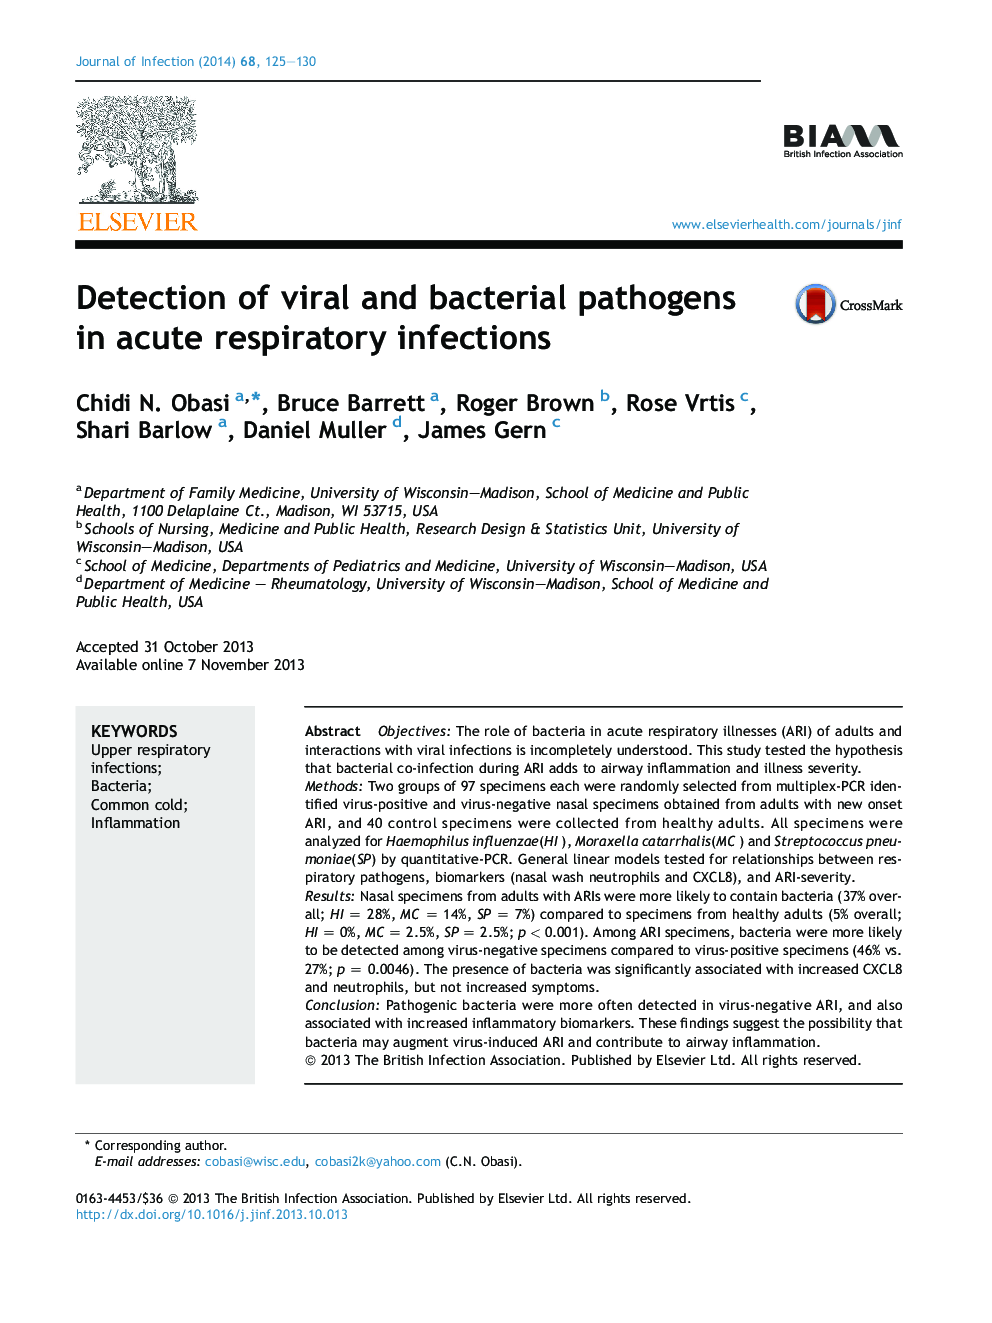 تشخیص پاتوژن های ویروسی و باکتریایی در عفونت های حاد تنفسی 